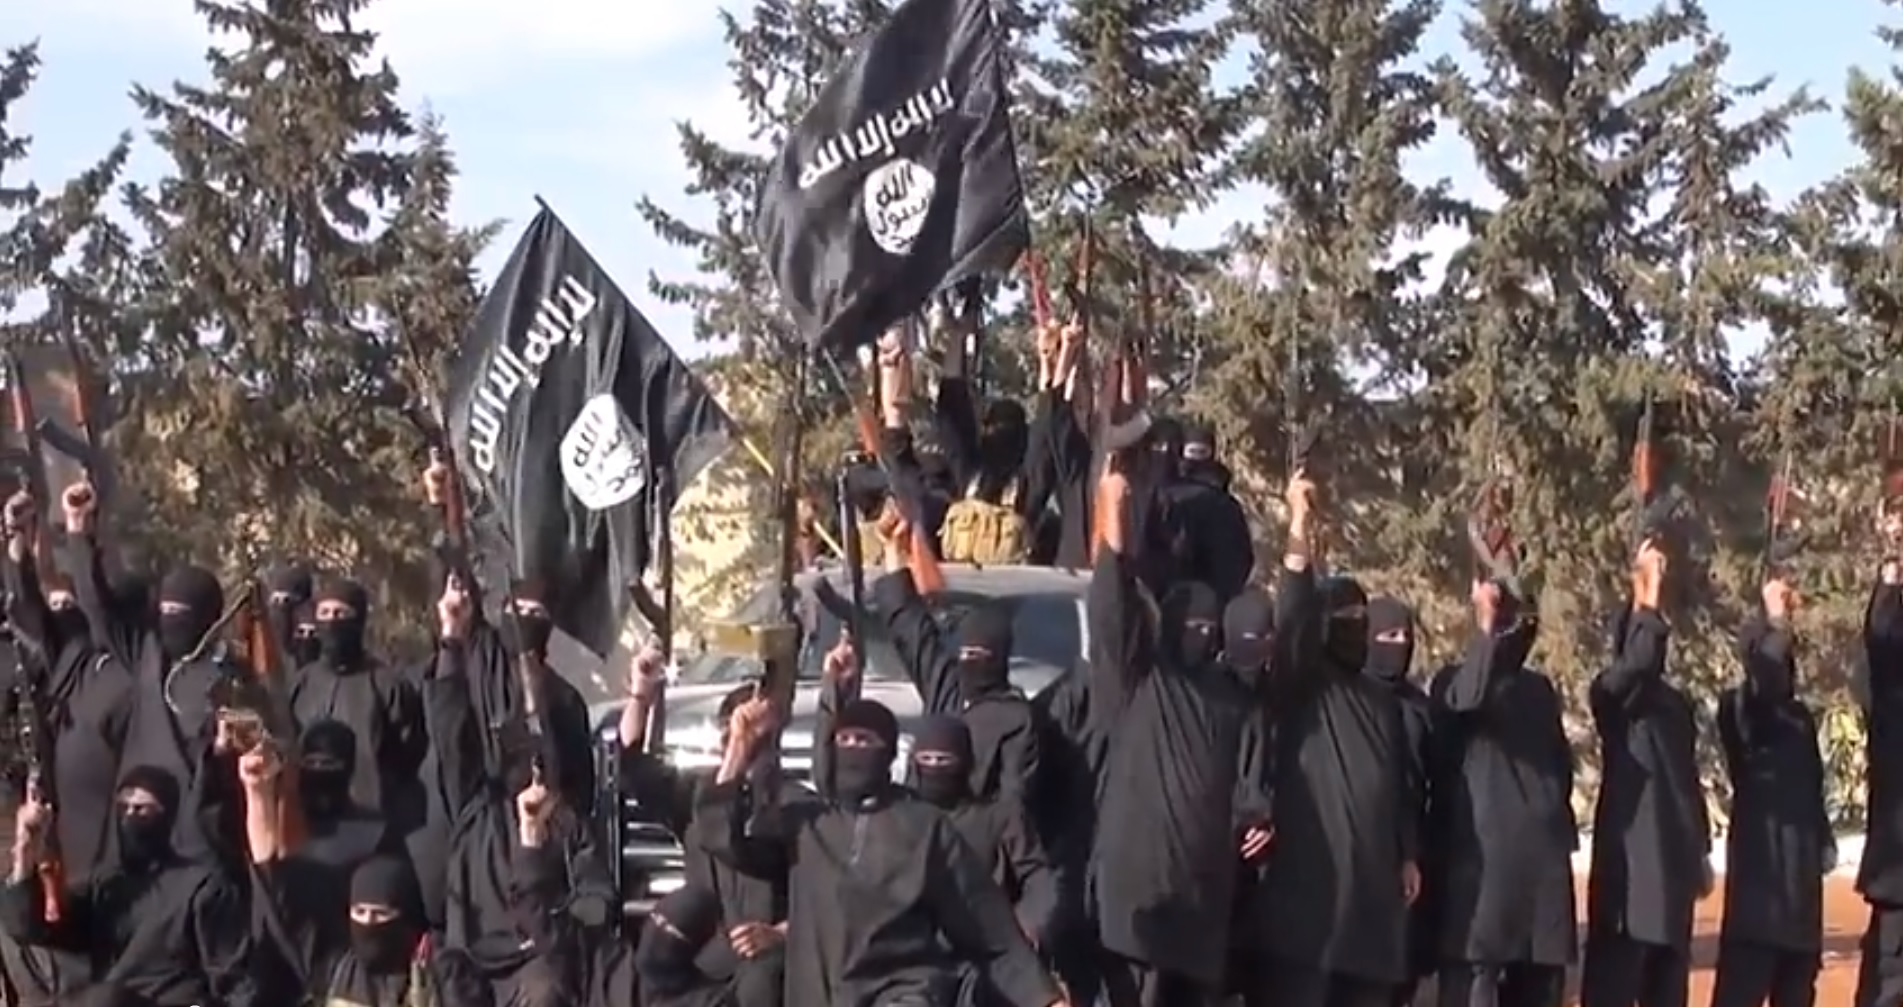 חמושי דאעש בסוריה, טרם הקמת המדינה האסלאמית